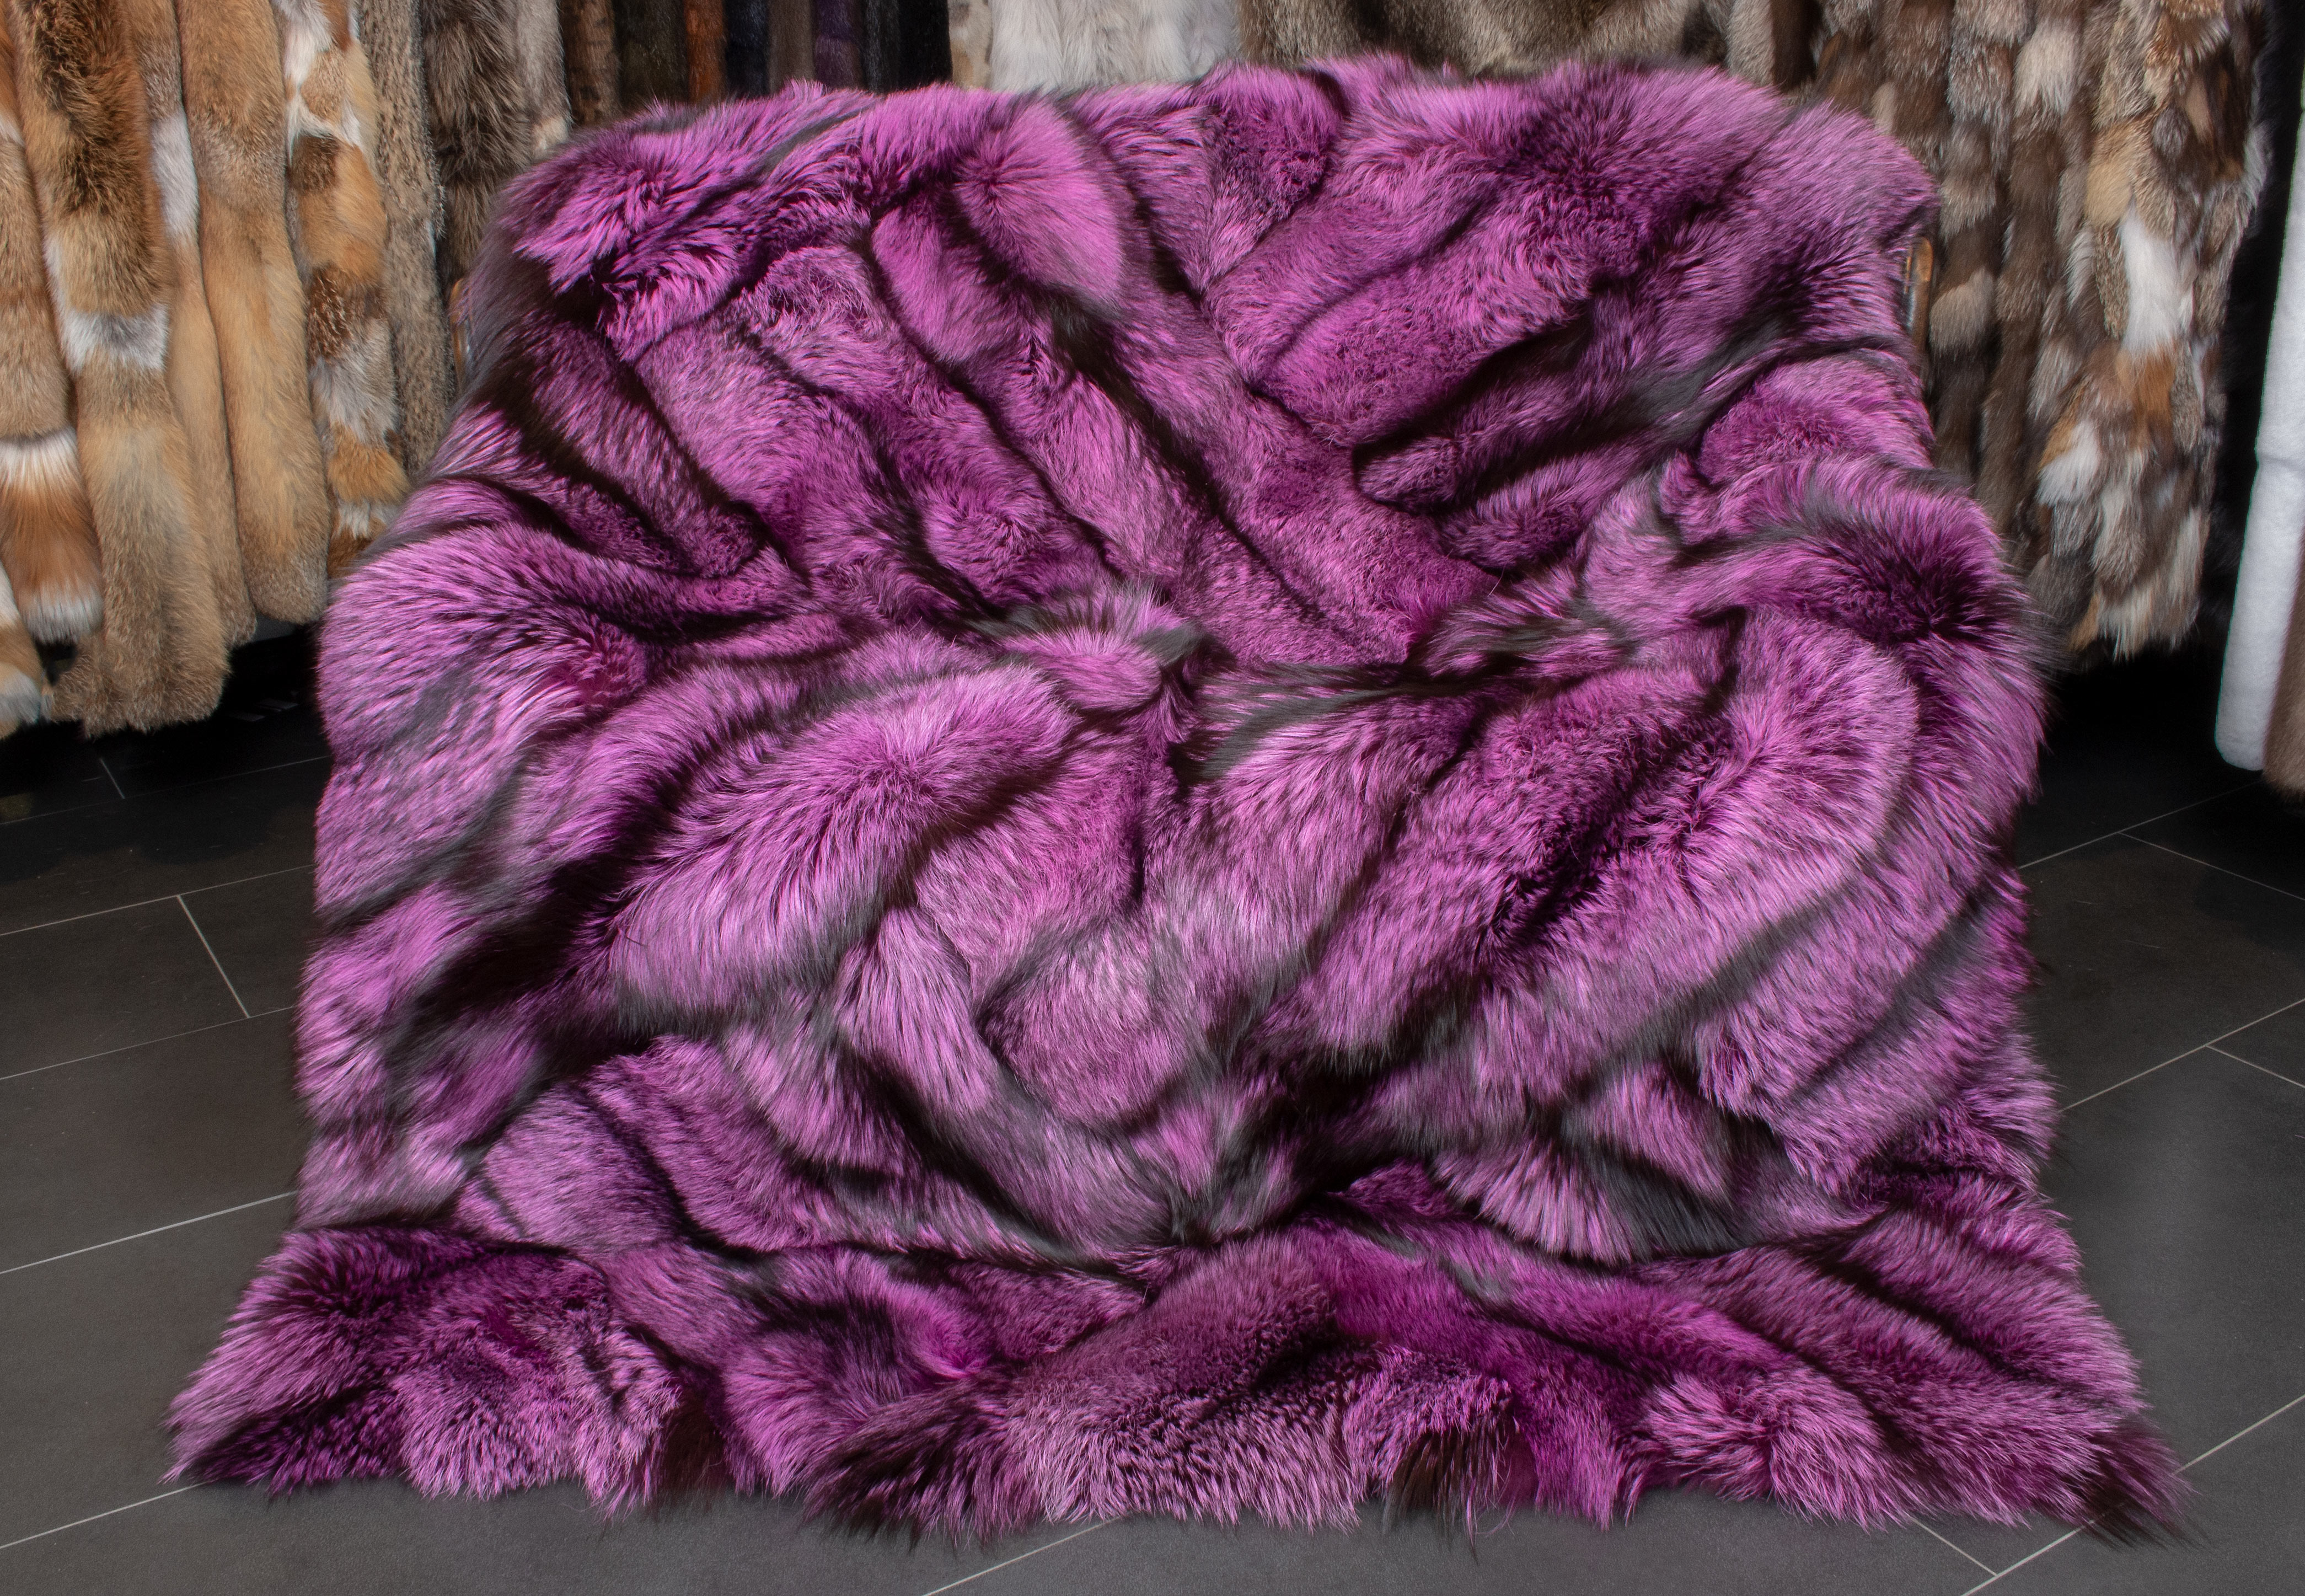 Silver Fox Fur Blanket in purple